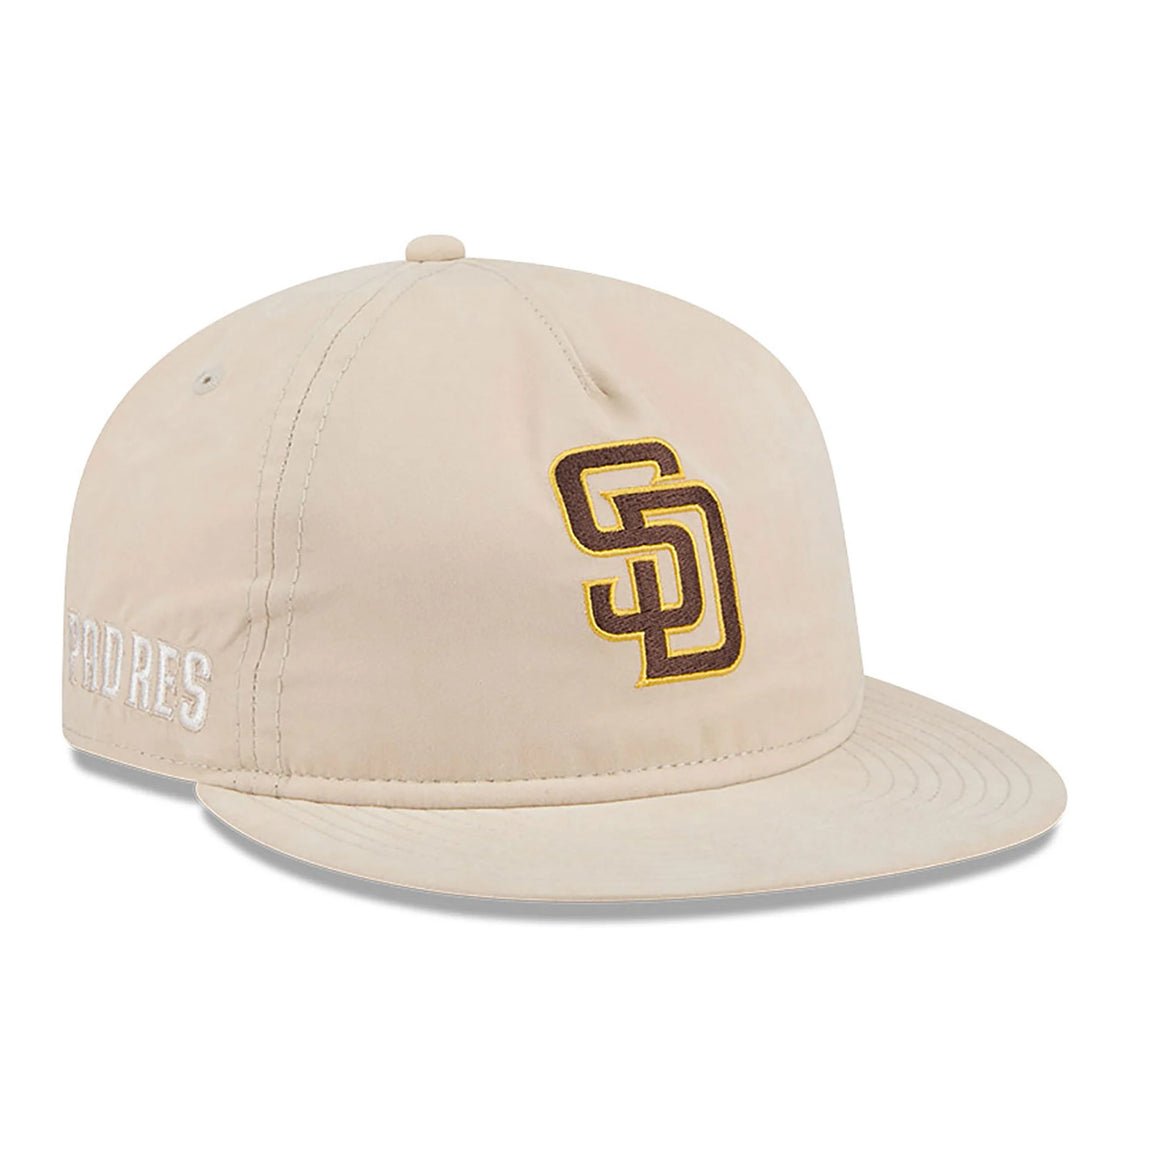 New Era 9FIFTY San Diego Padres Brushed Nylon Strapback Cap (Cream) - New Era 9FIFTY San Diego Padres Brushed Nylon Strapback Cap (Cream) - 